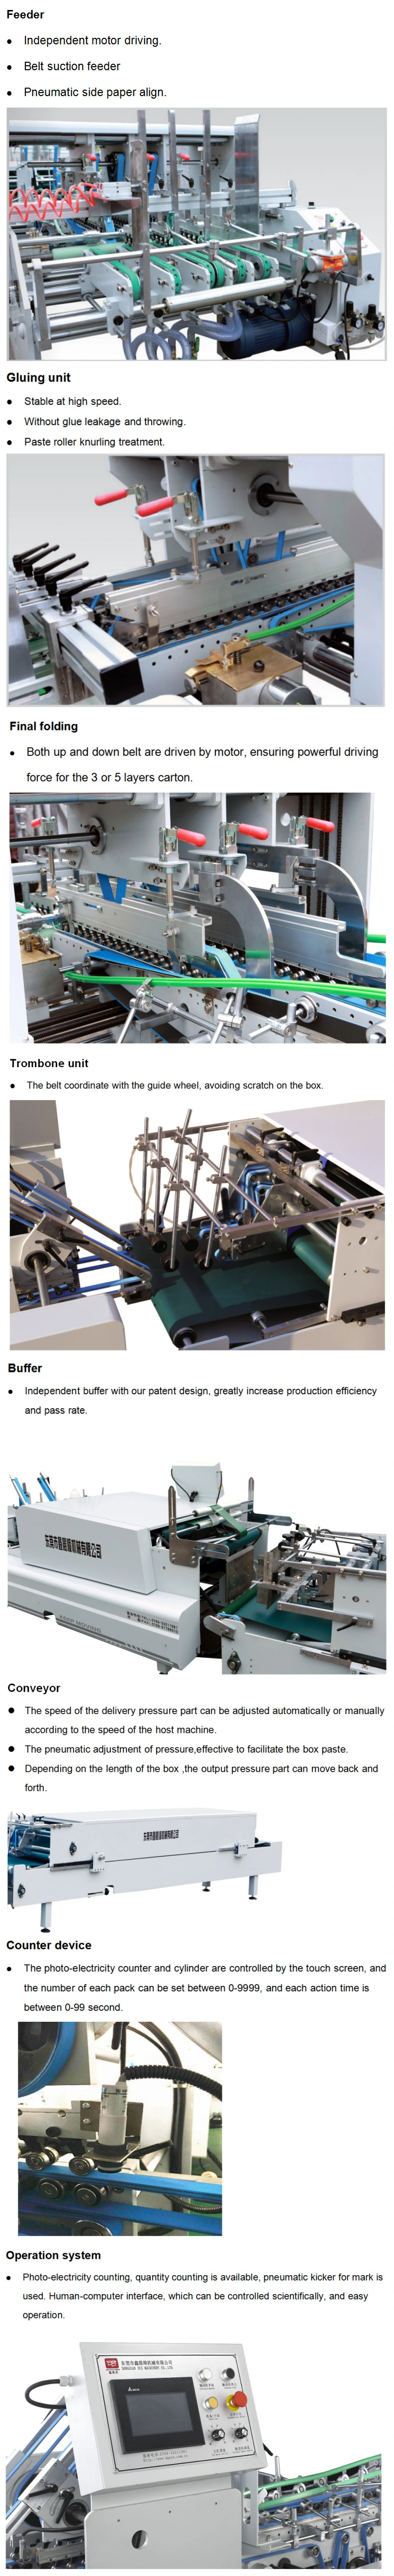 Xcs-1200 Automatic Folder Gluer for Corrugated Box Making